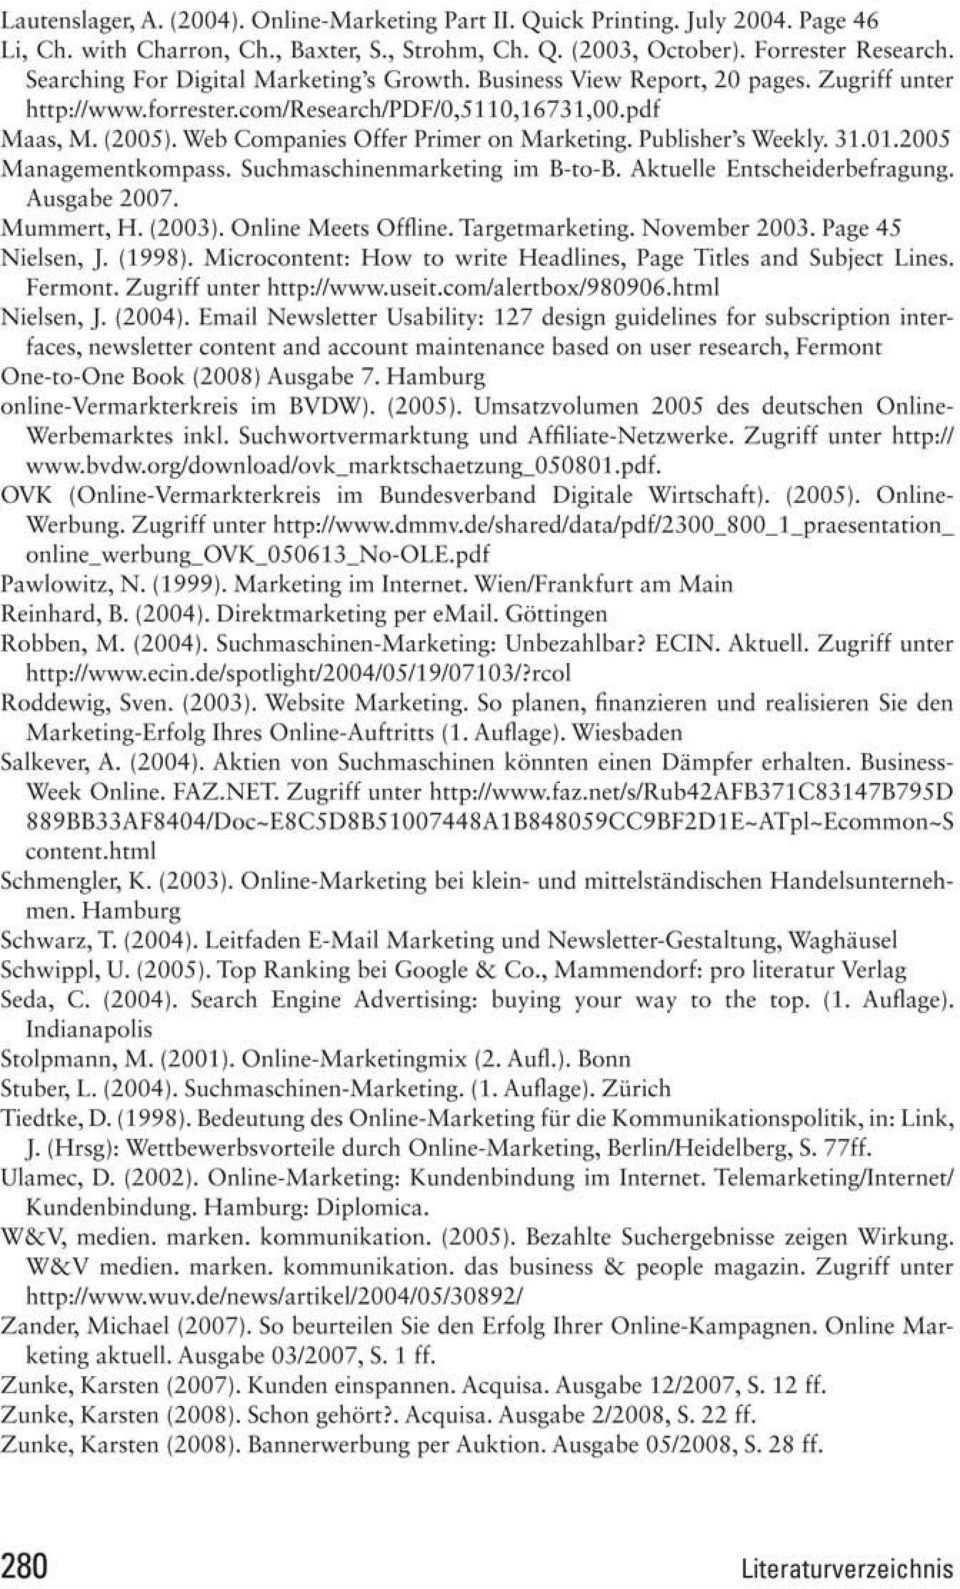 Web Companics Offer Pruncr on Marketing. Publisher's Weekly. 31.01.2005 Marugemcnrkornpass. Suchmaschinenmarketing im B-to-B. Aktuelle Entscheiderbcfragung. Ausgahe Z007. Mummcrt, H.(2003).